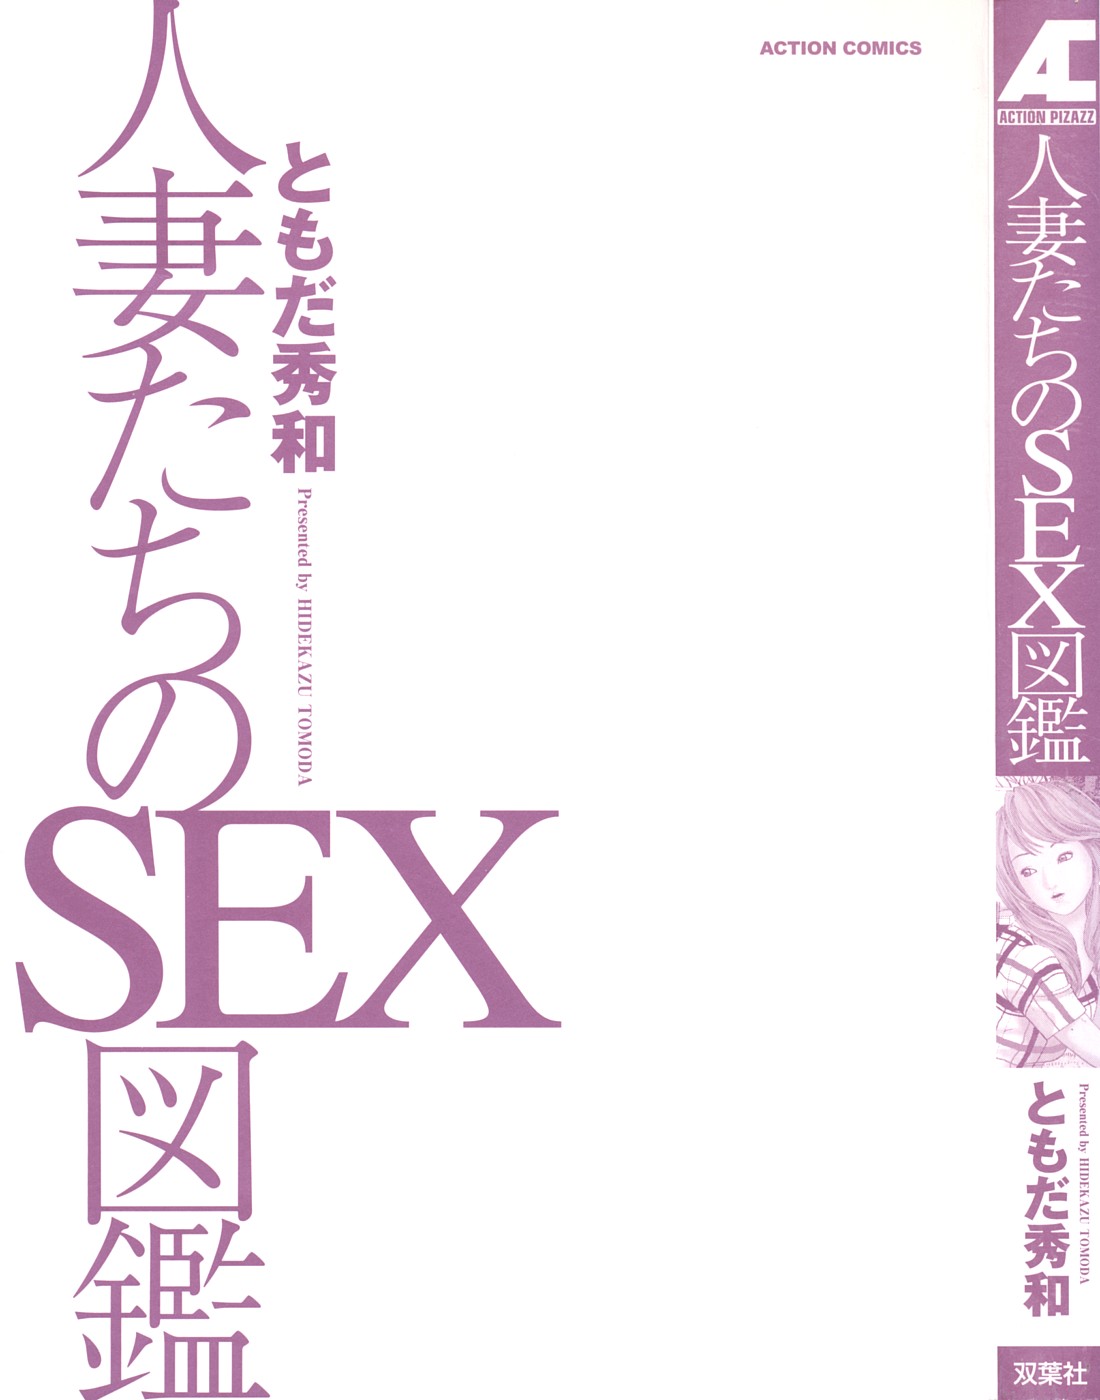 [Hidekazu Tomoda] Guide Book of Married Sex 